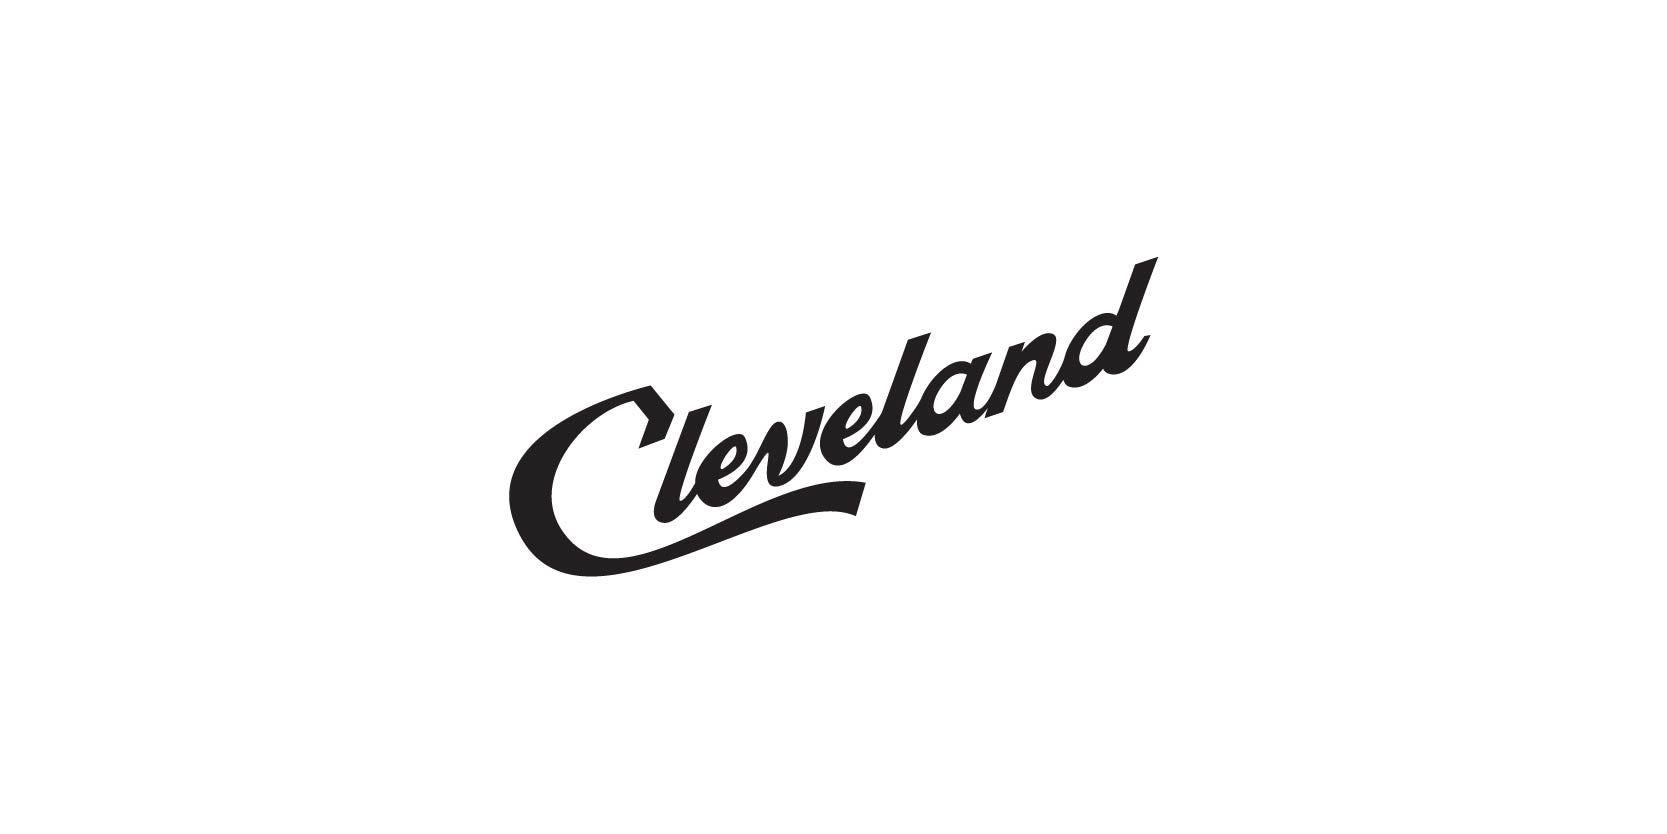 Cleveland Visitors Center